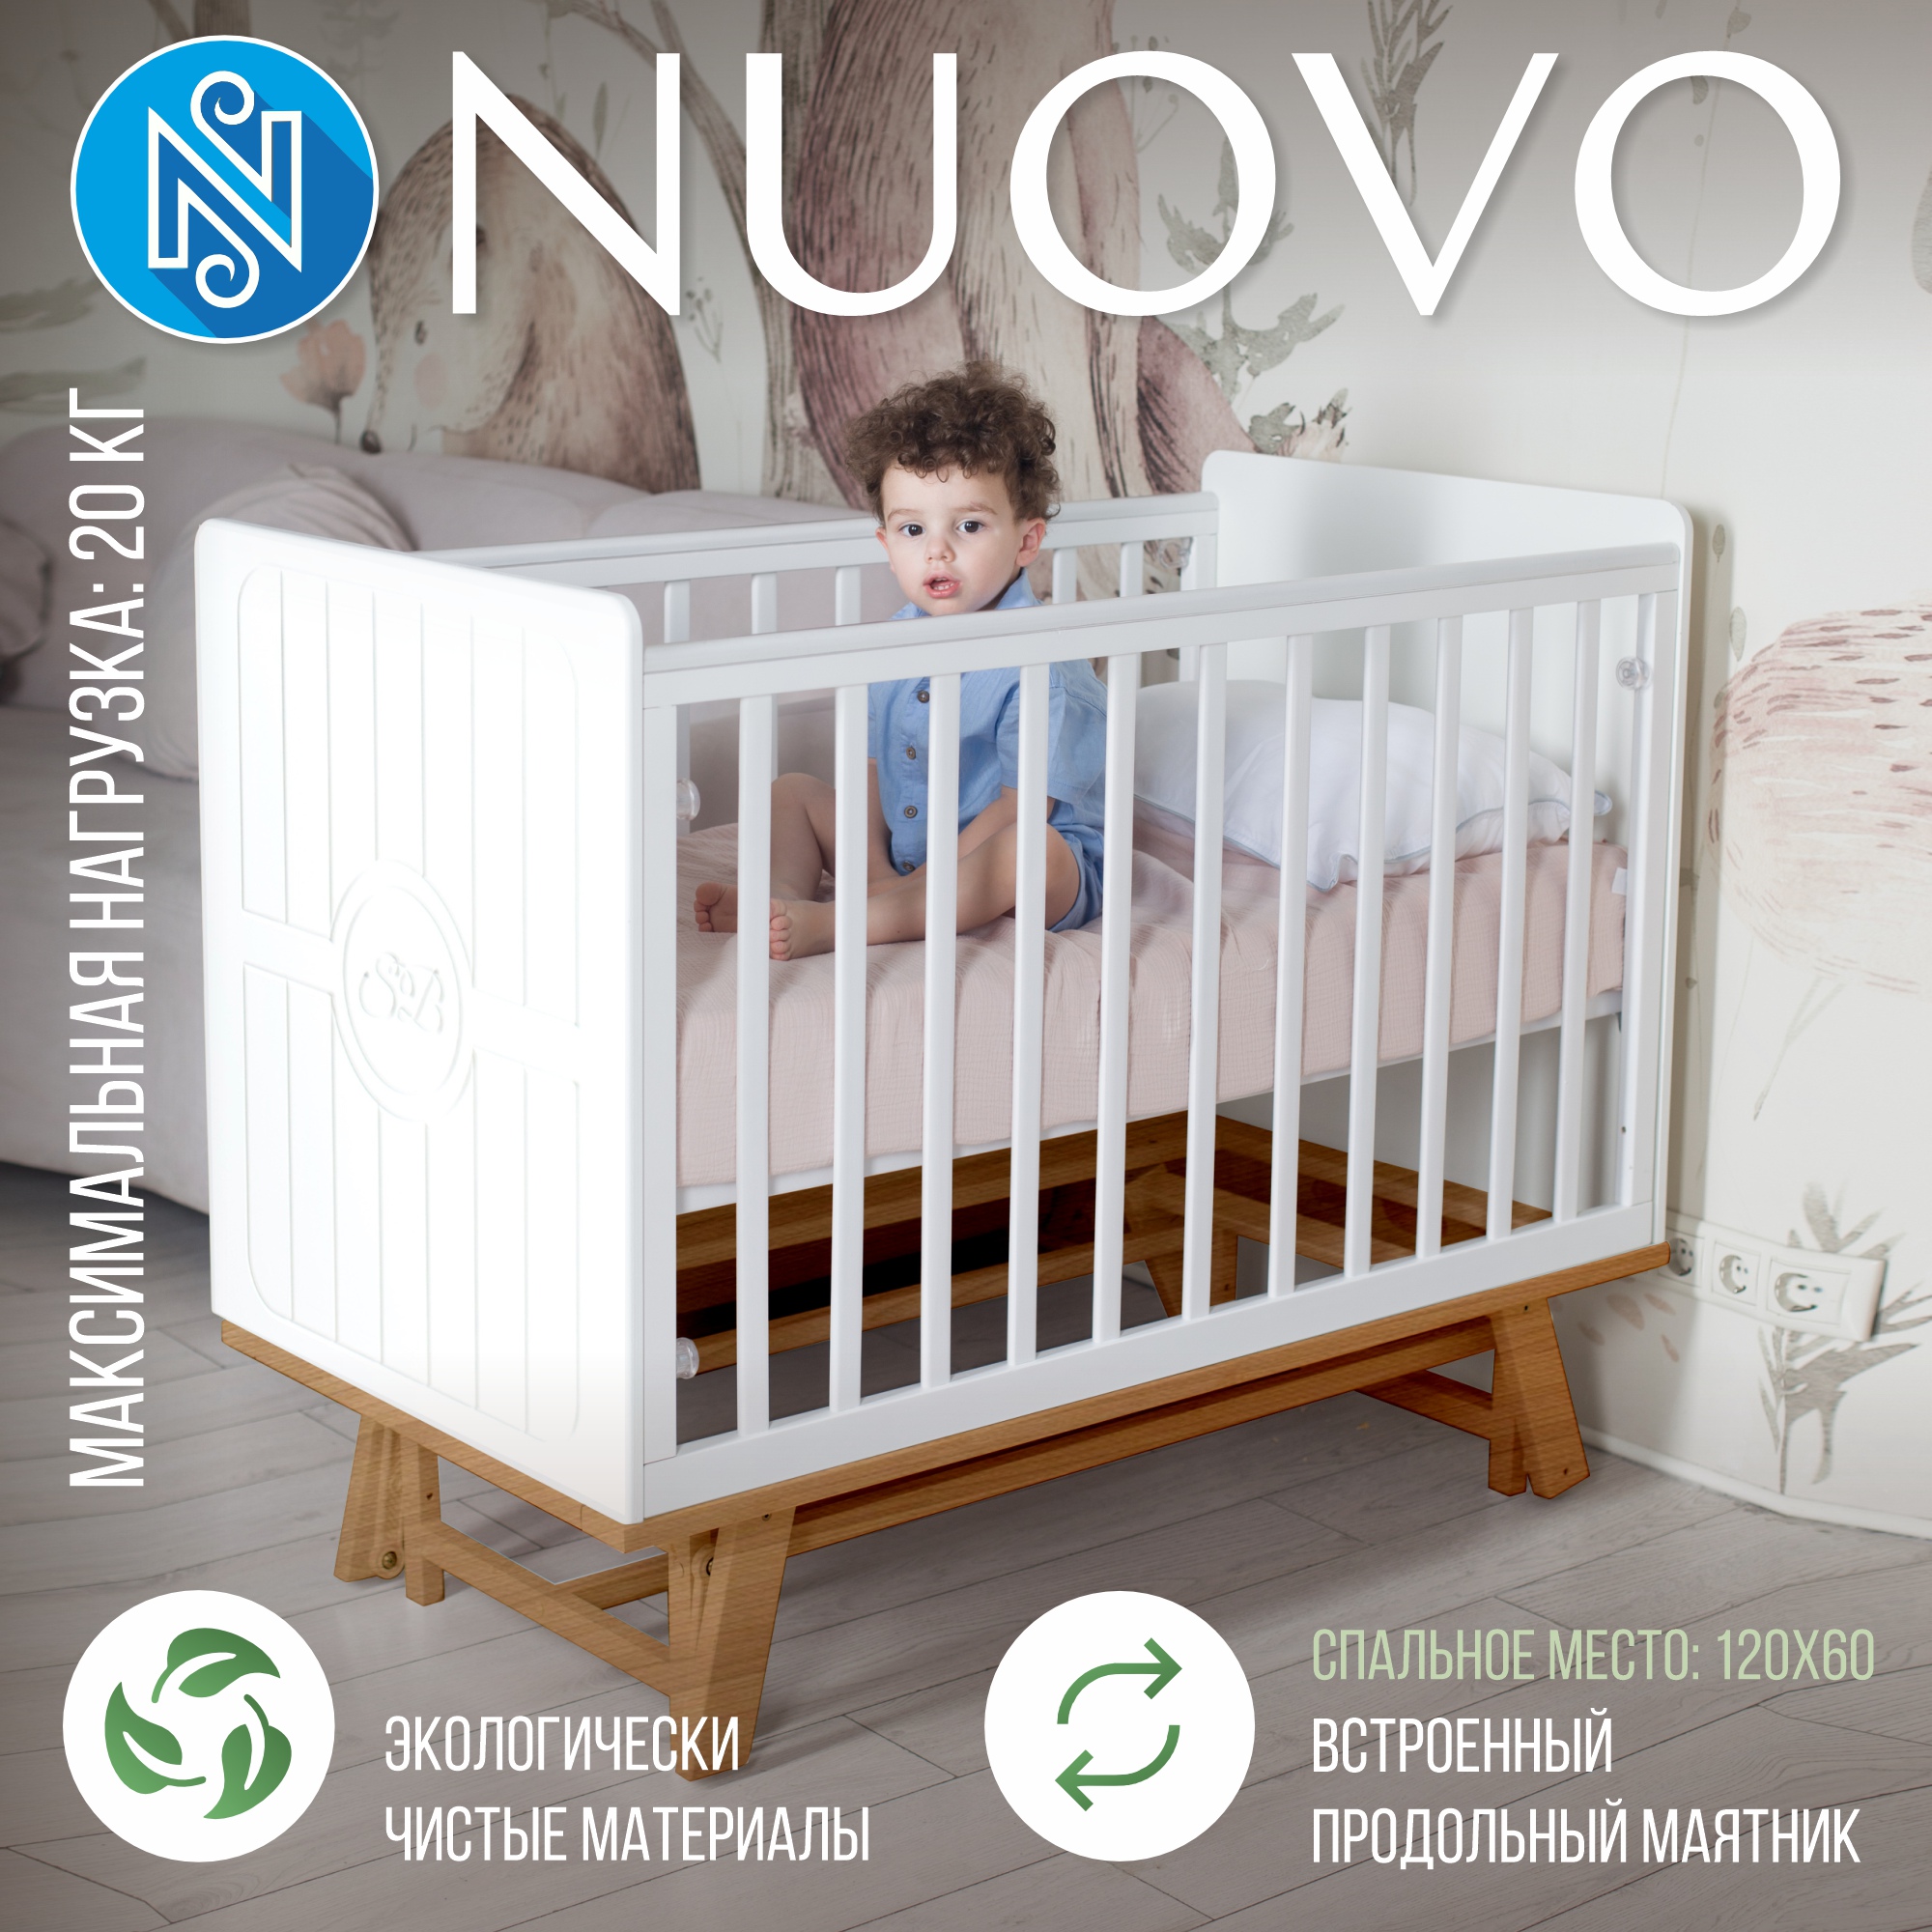 Детская кроватка Sweet Baby с маятником Nuovo БелыйНатуральный набор женских носовых платков nuovo размер 35х35см 10шт хл 35% пэ 65%